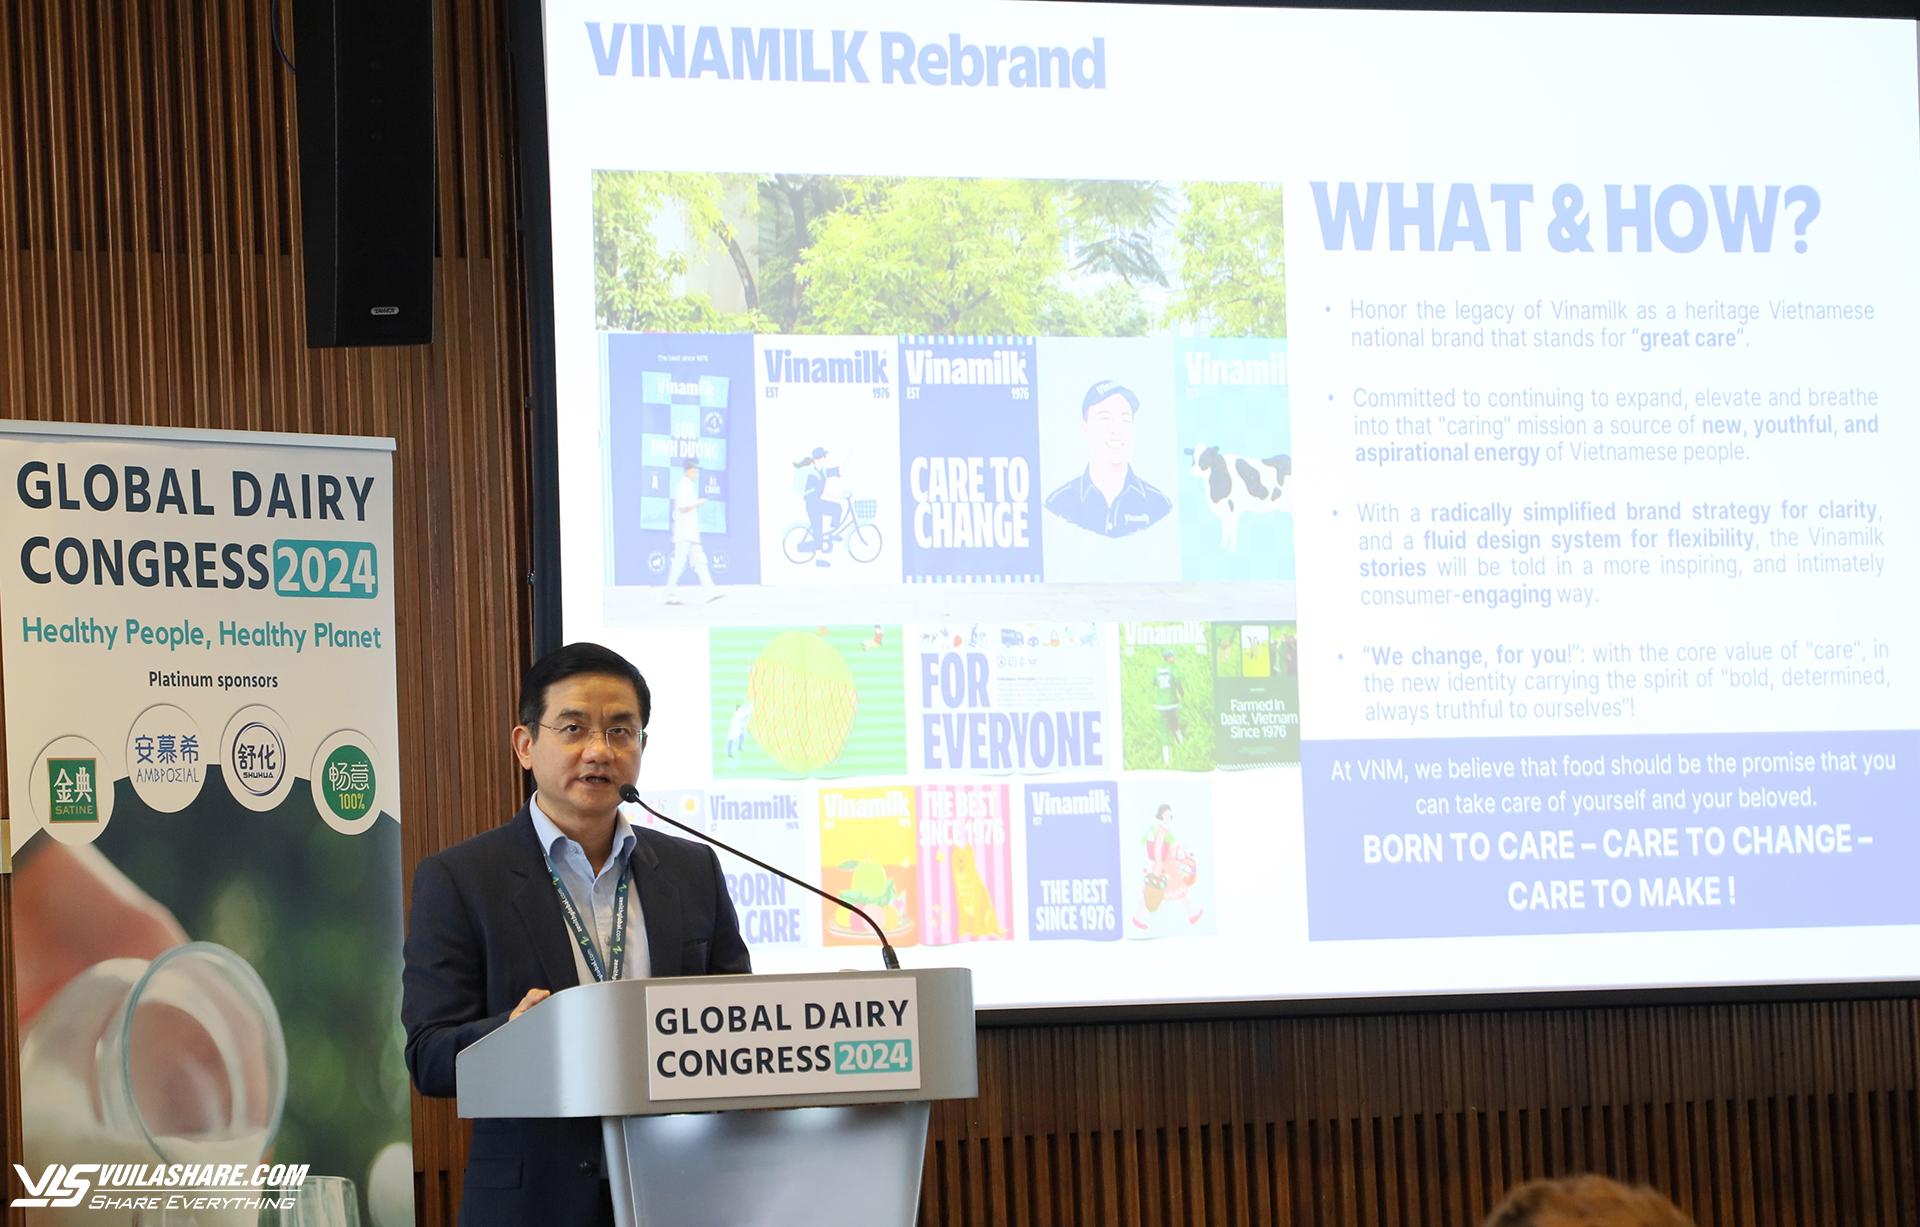 Ông Nguyễn Quang Trí, Giám đốc điều hành Marketing Vinamilk, trình bày bài tham luận về chiến lược đổi mới và phát triển bền vững của Vinamilk, với thông điệp "Để tâm thay đổi"